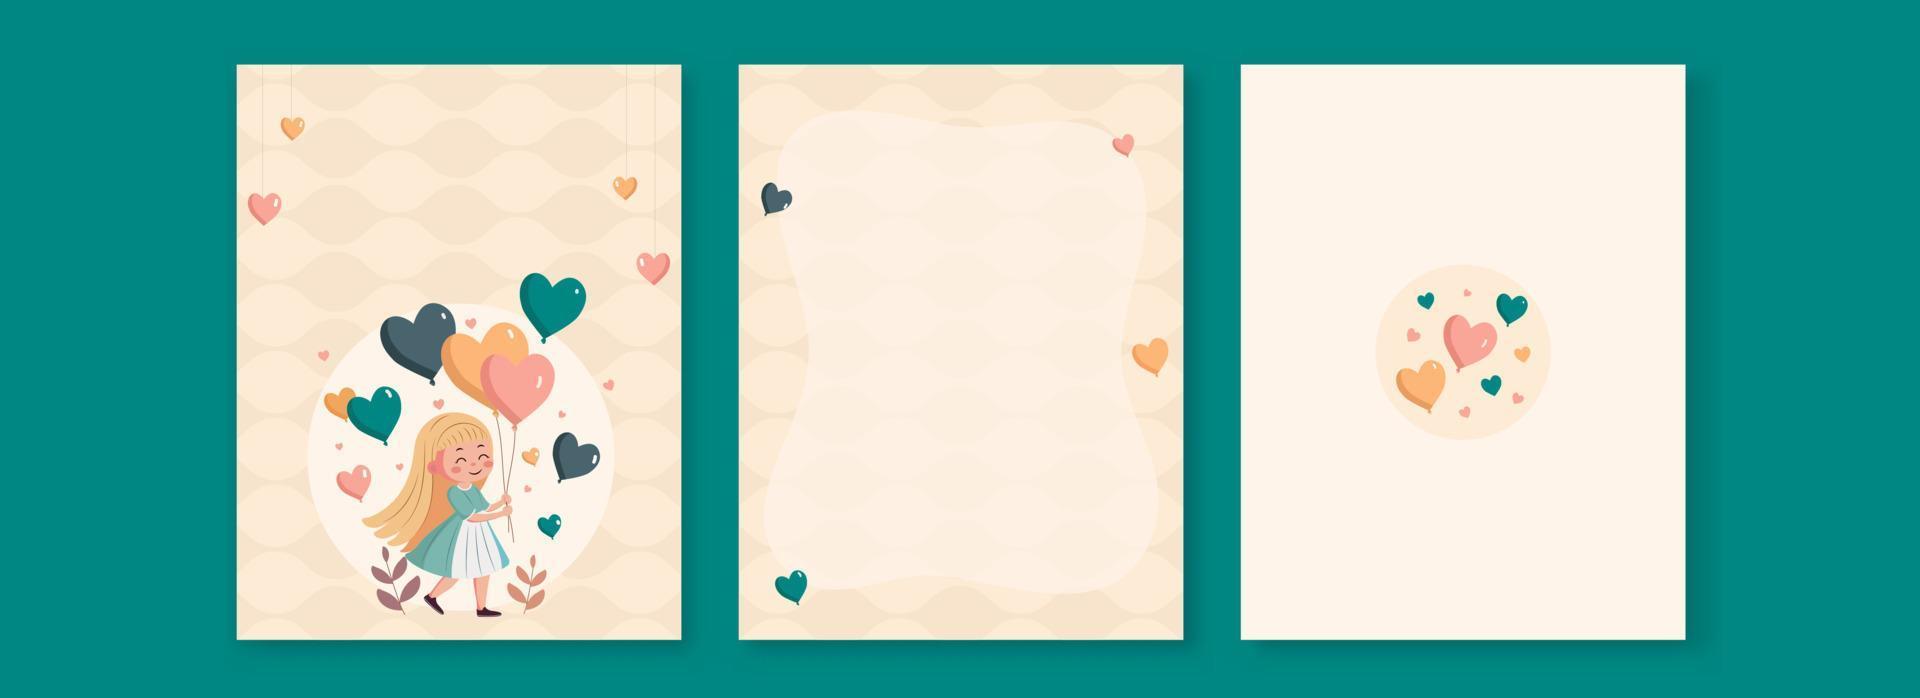 amor saludo tarjetas con linda niña personaje caminando, corazón globos y espacio para texto o mensaje. vector